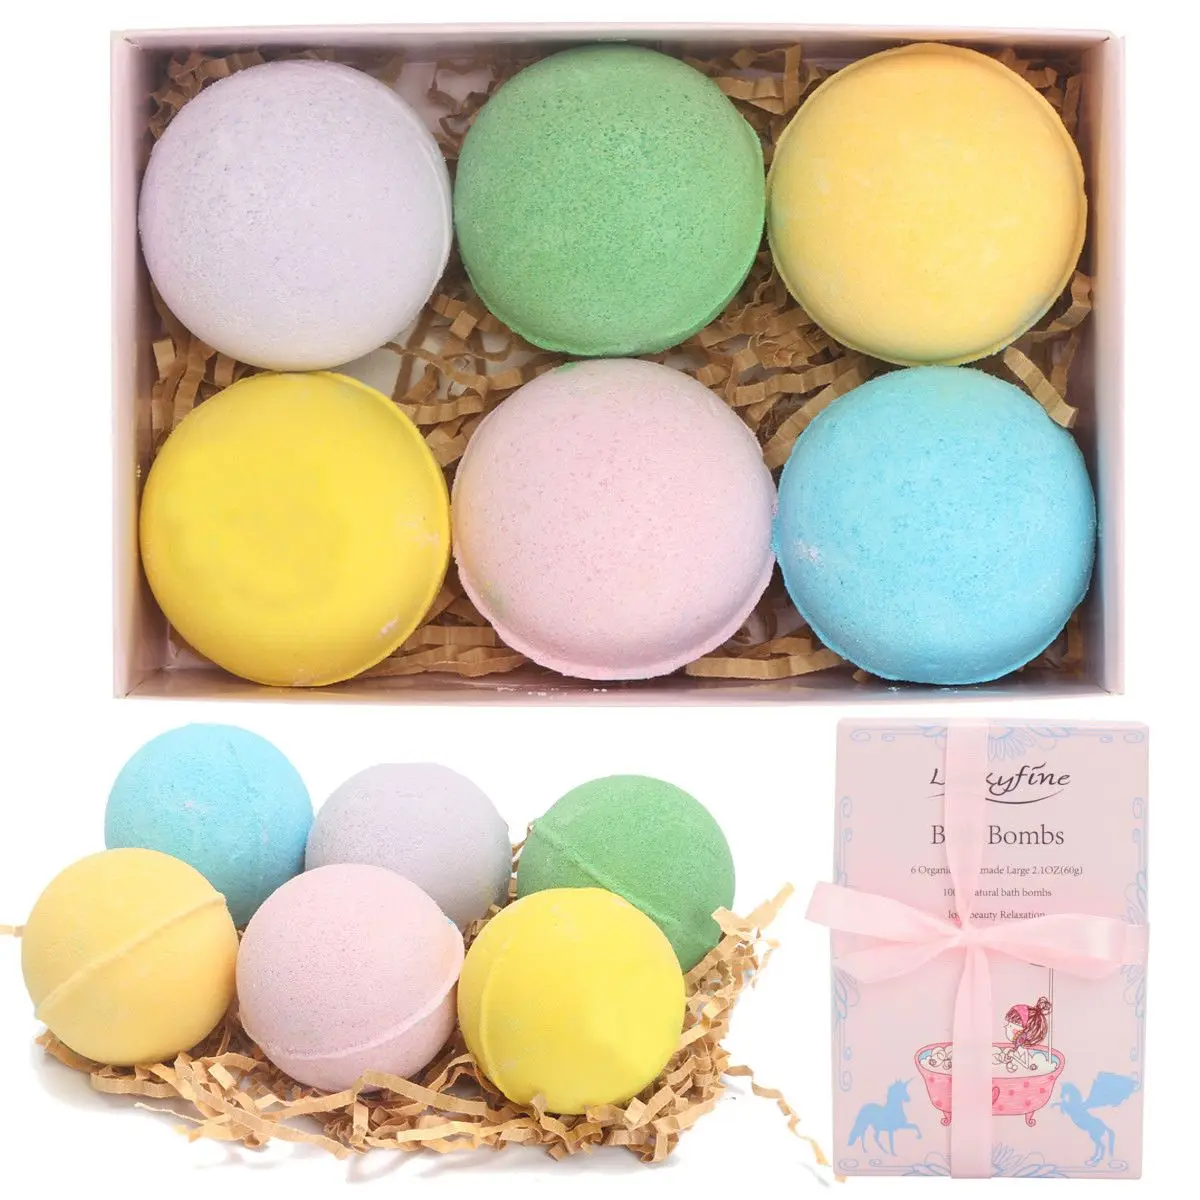 6 шт. органические ванны соль мяч тела эфирное масло мяч для ванной натуральные пузыри для ванны бомбы шар роза/зеленый